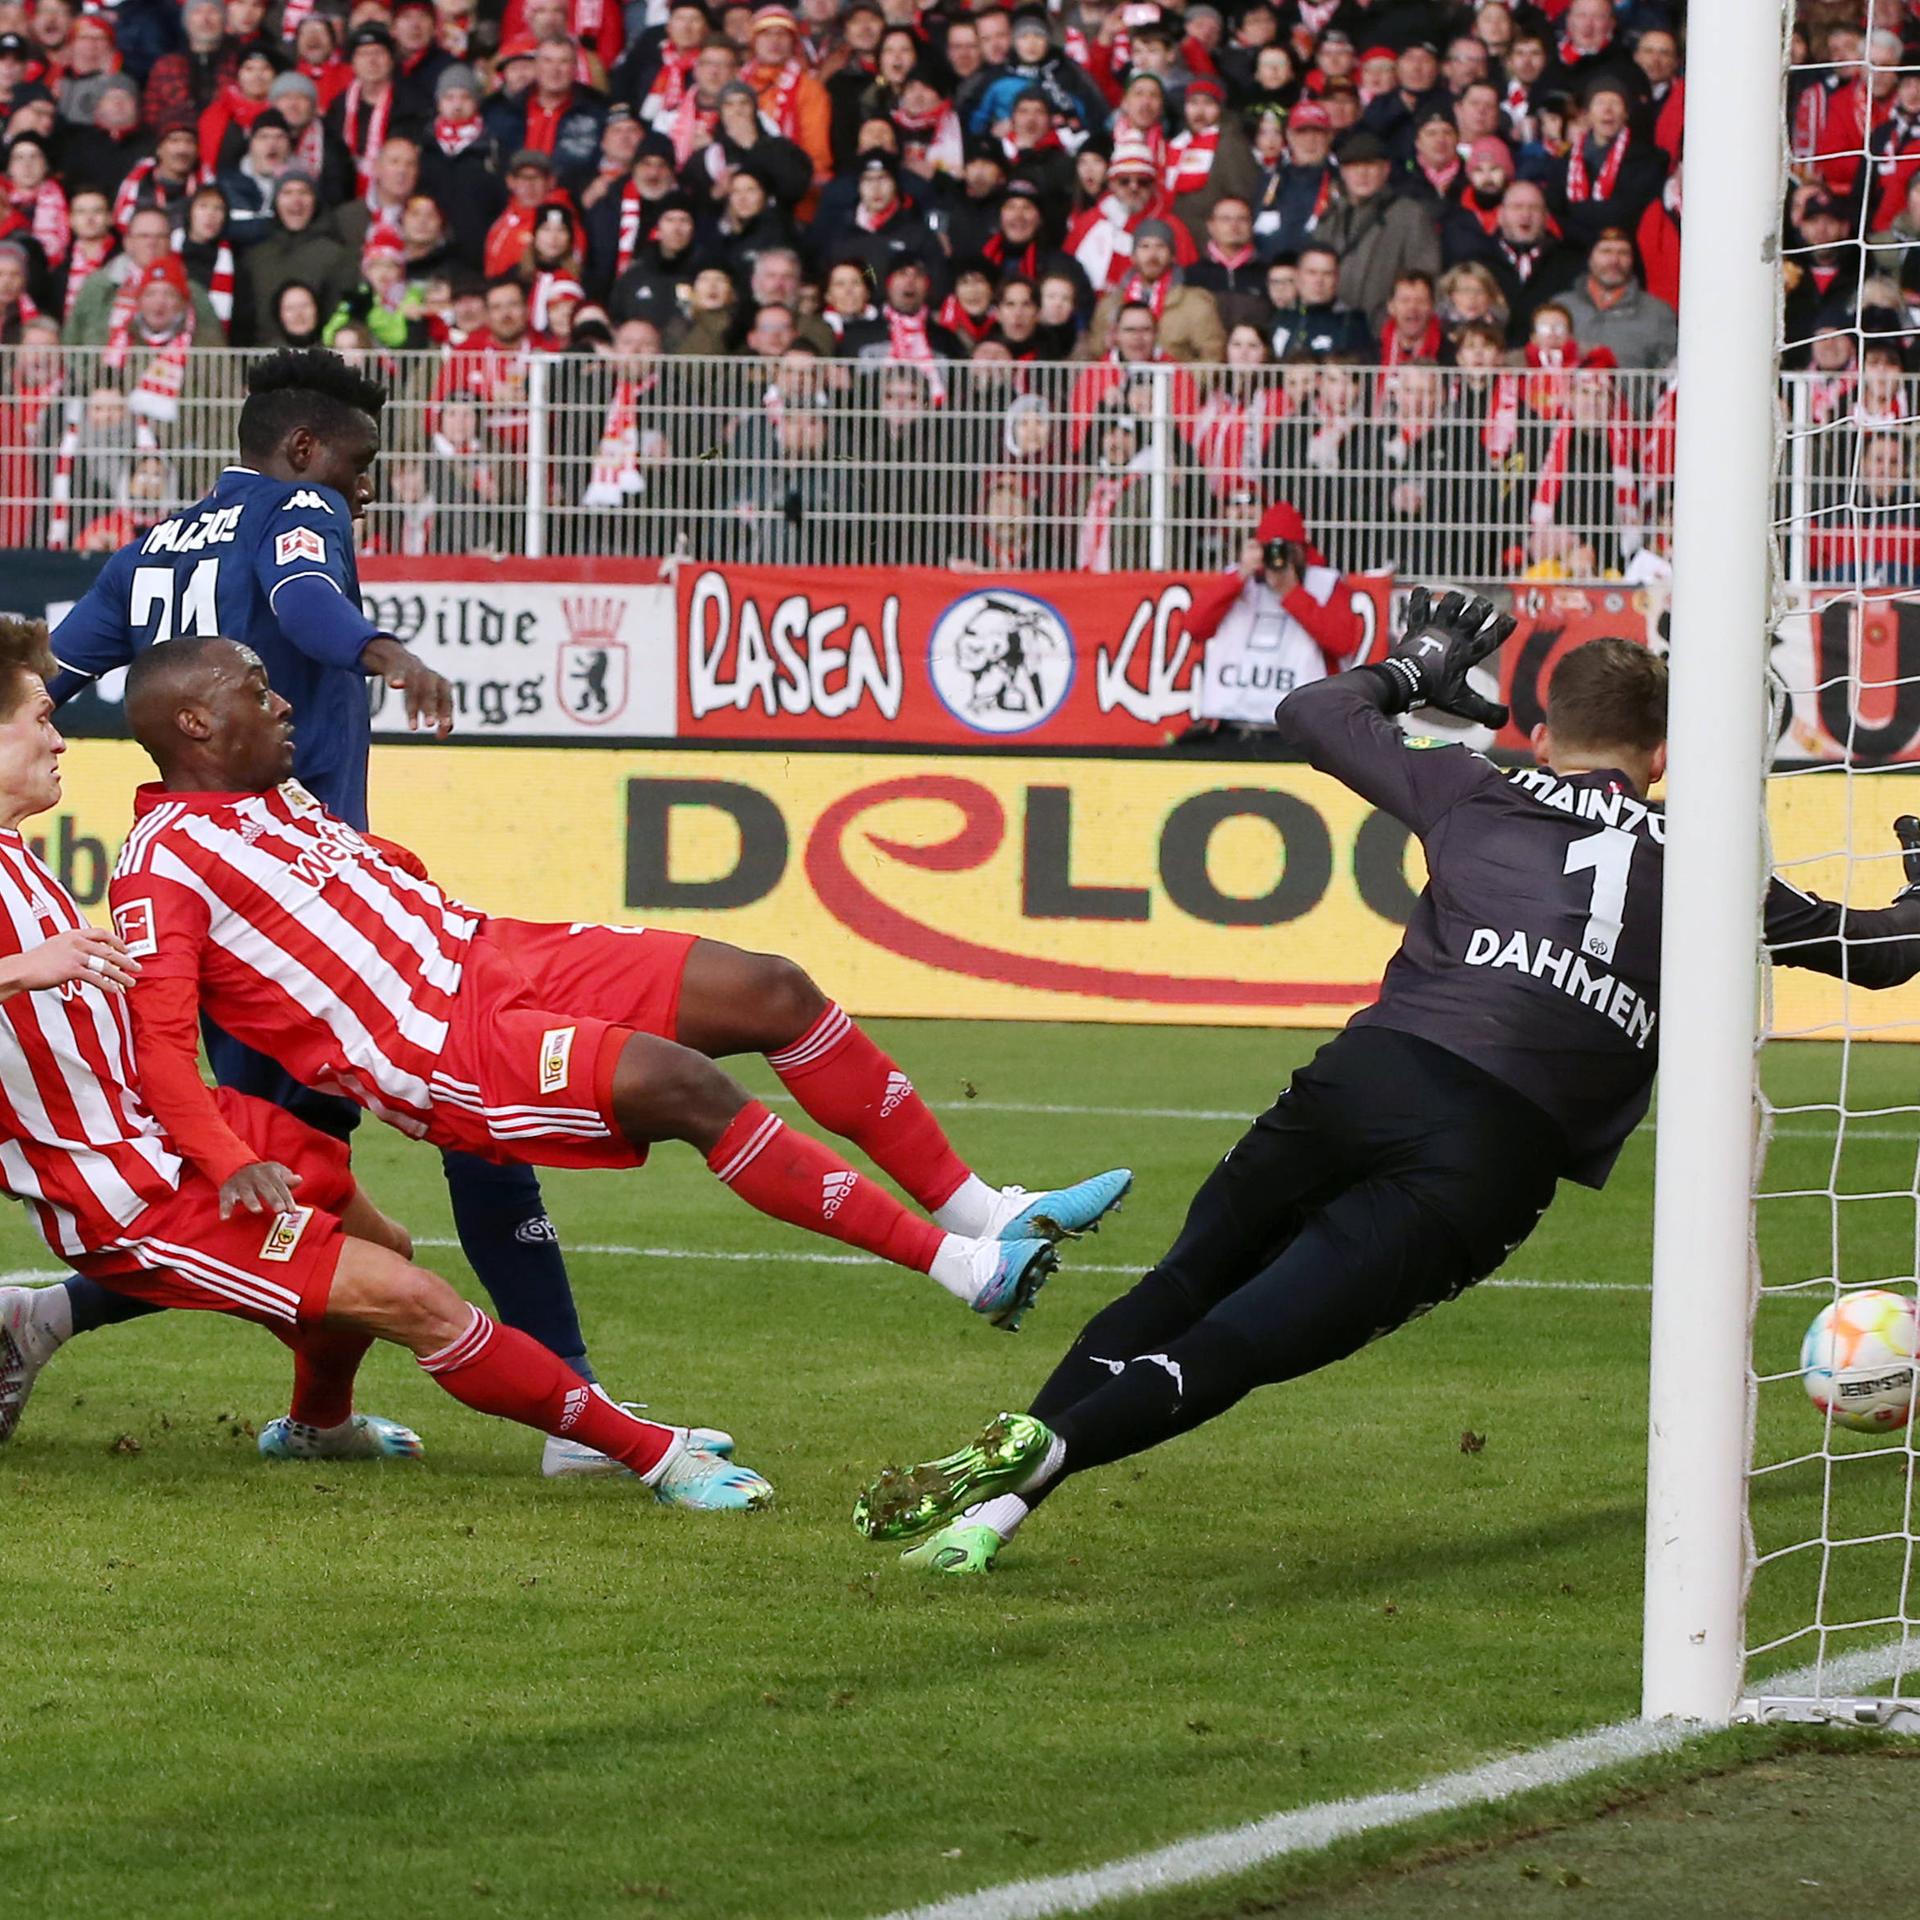 Unions Stürmer Kevin Behrens erzielt das Tor zum 1:0 gegen den Mainzer Torwart Finn Dahmen